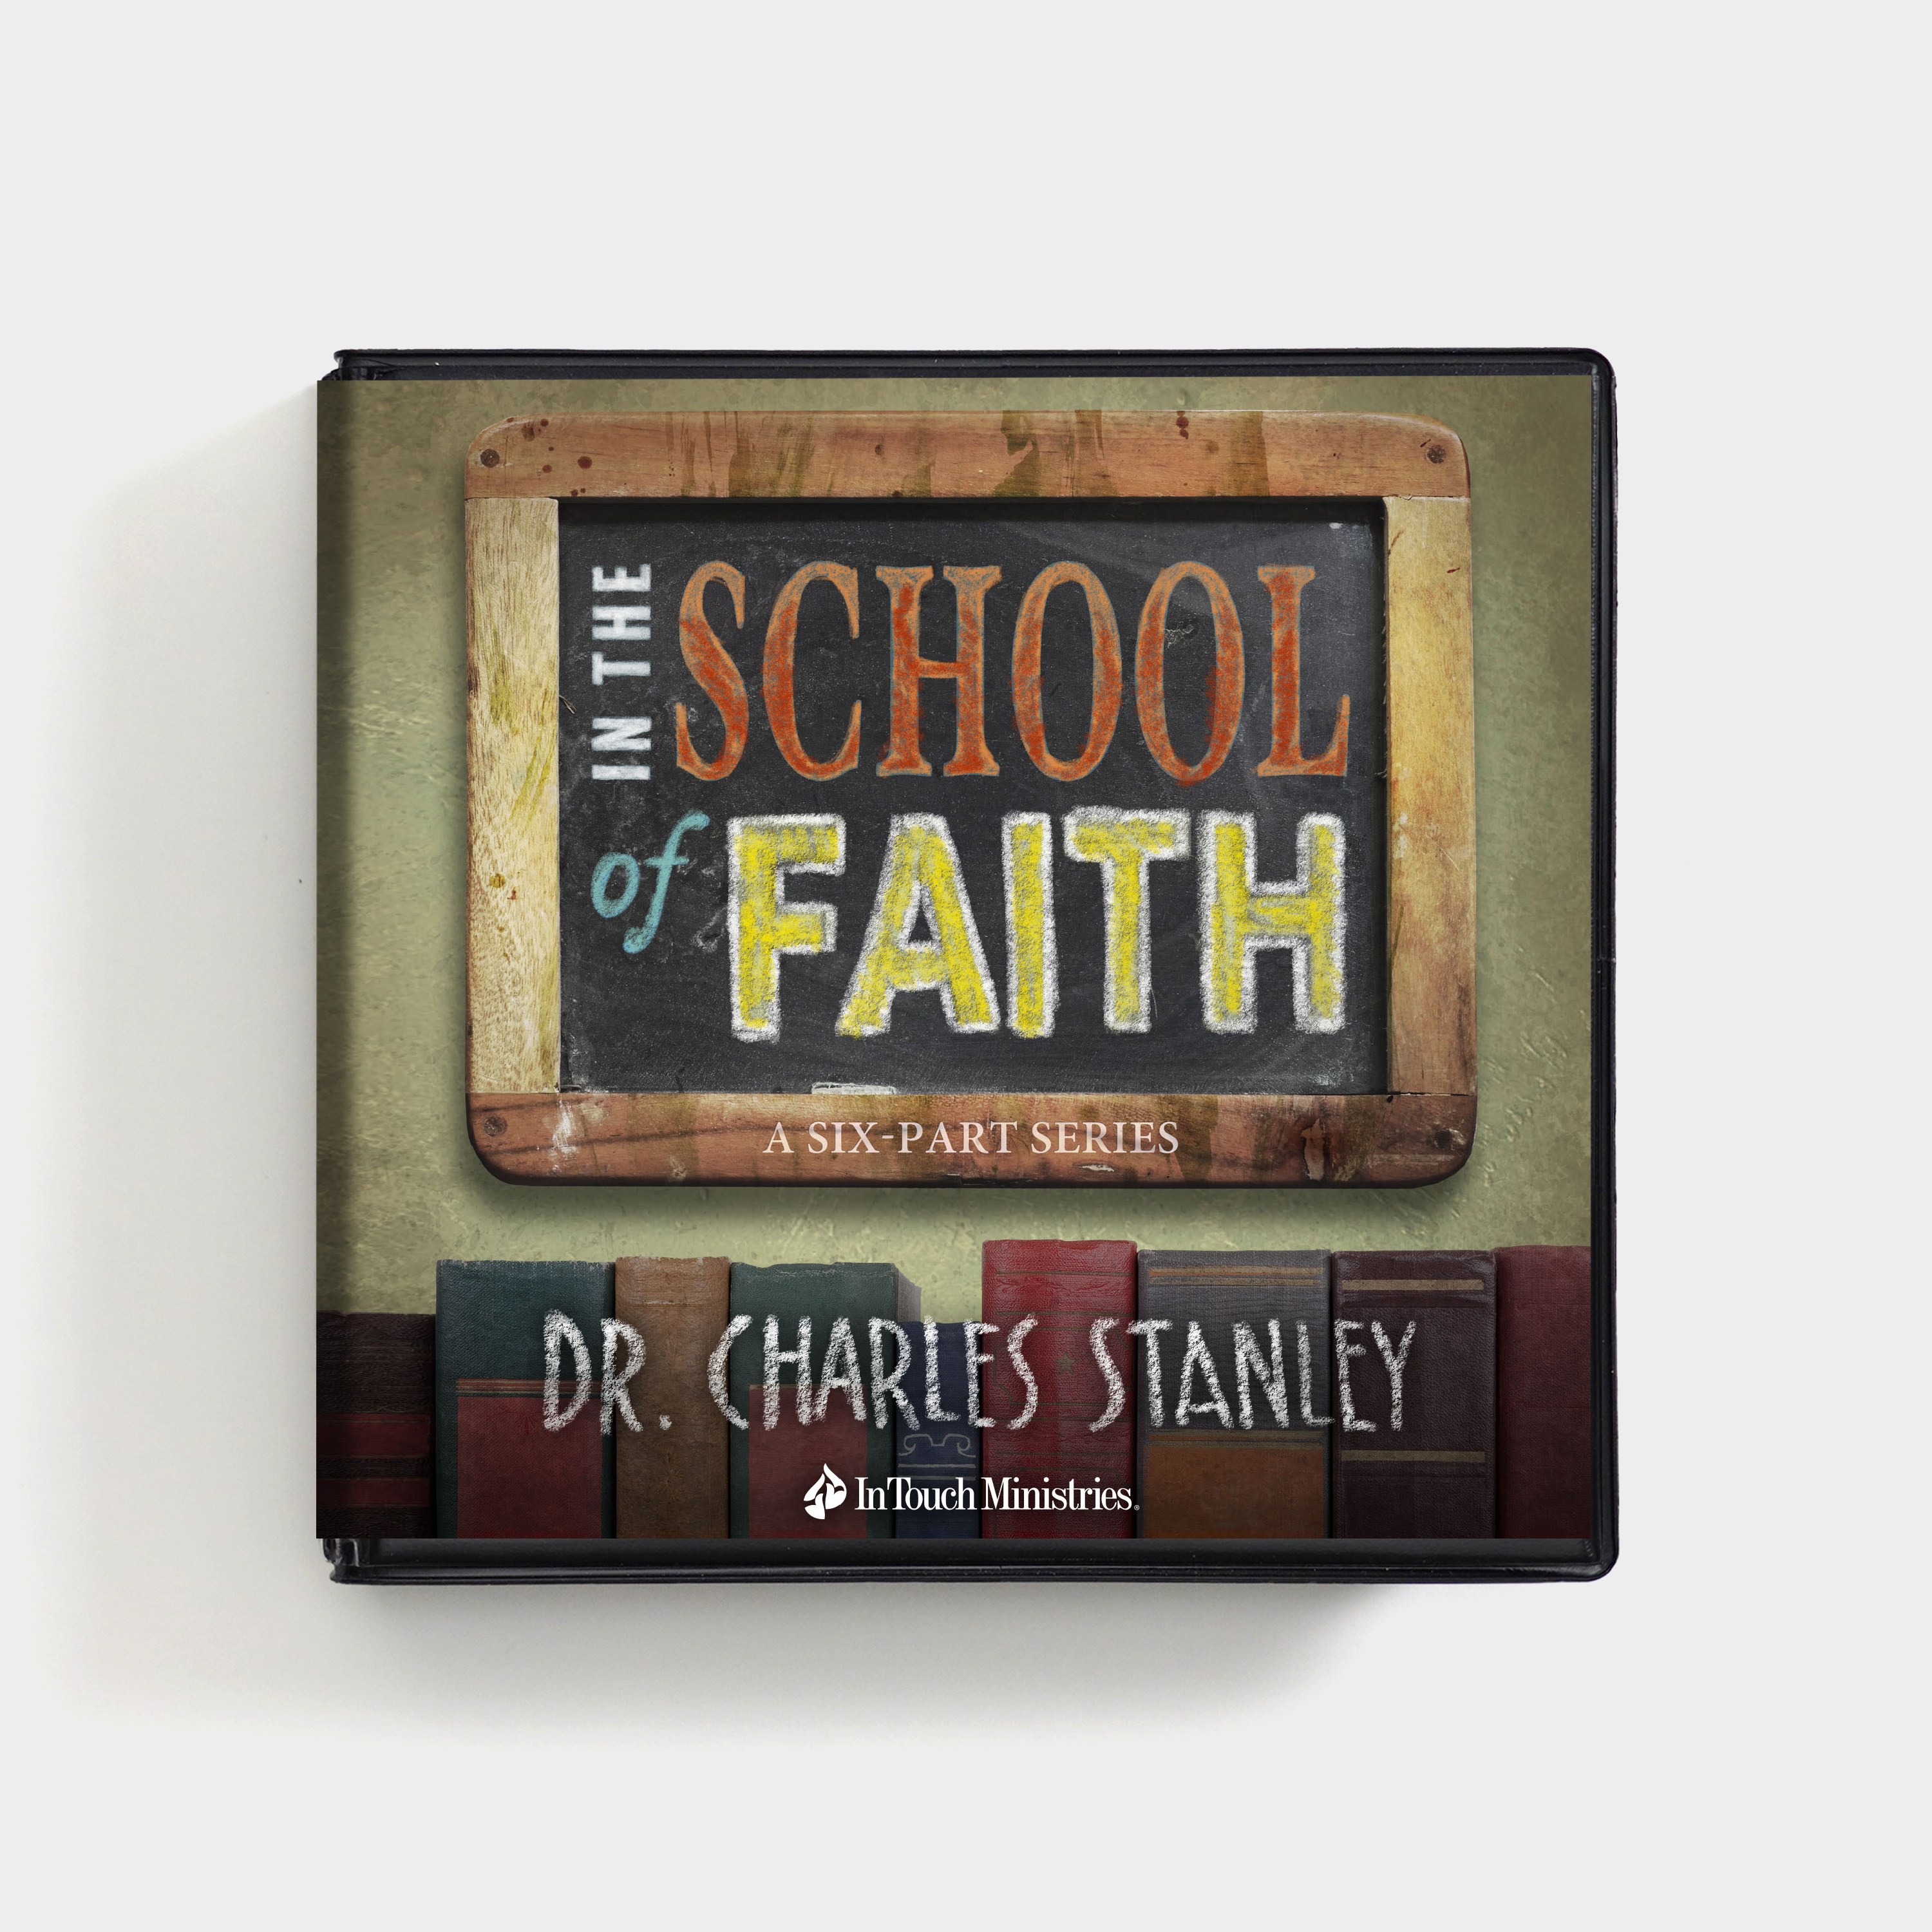 In the School of Faith